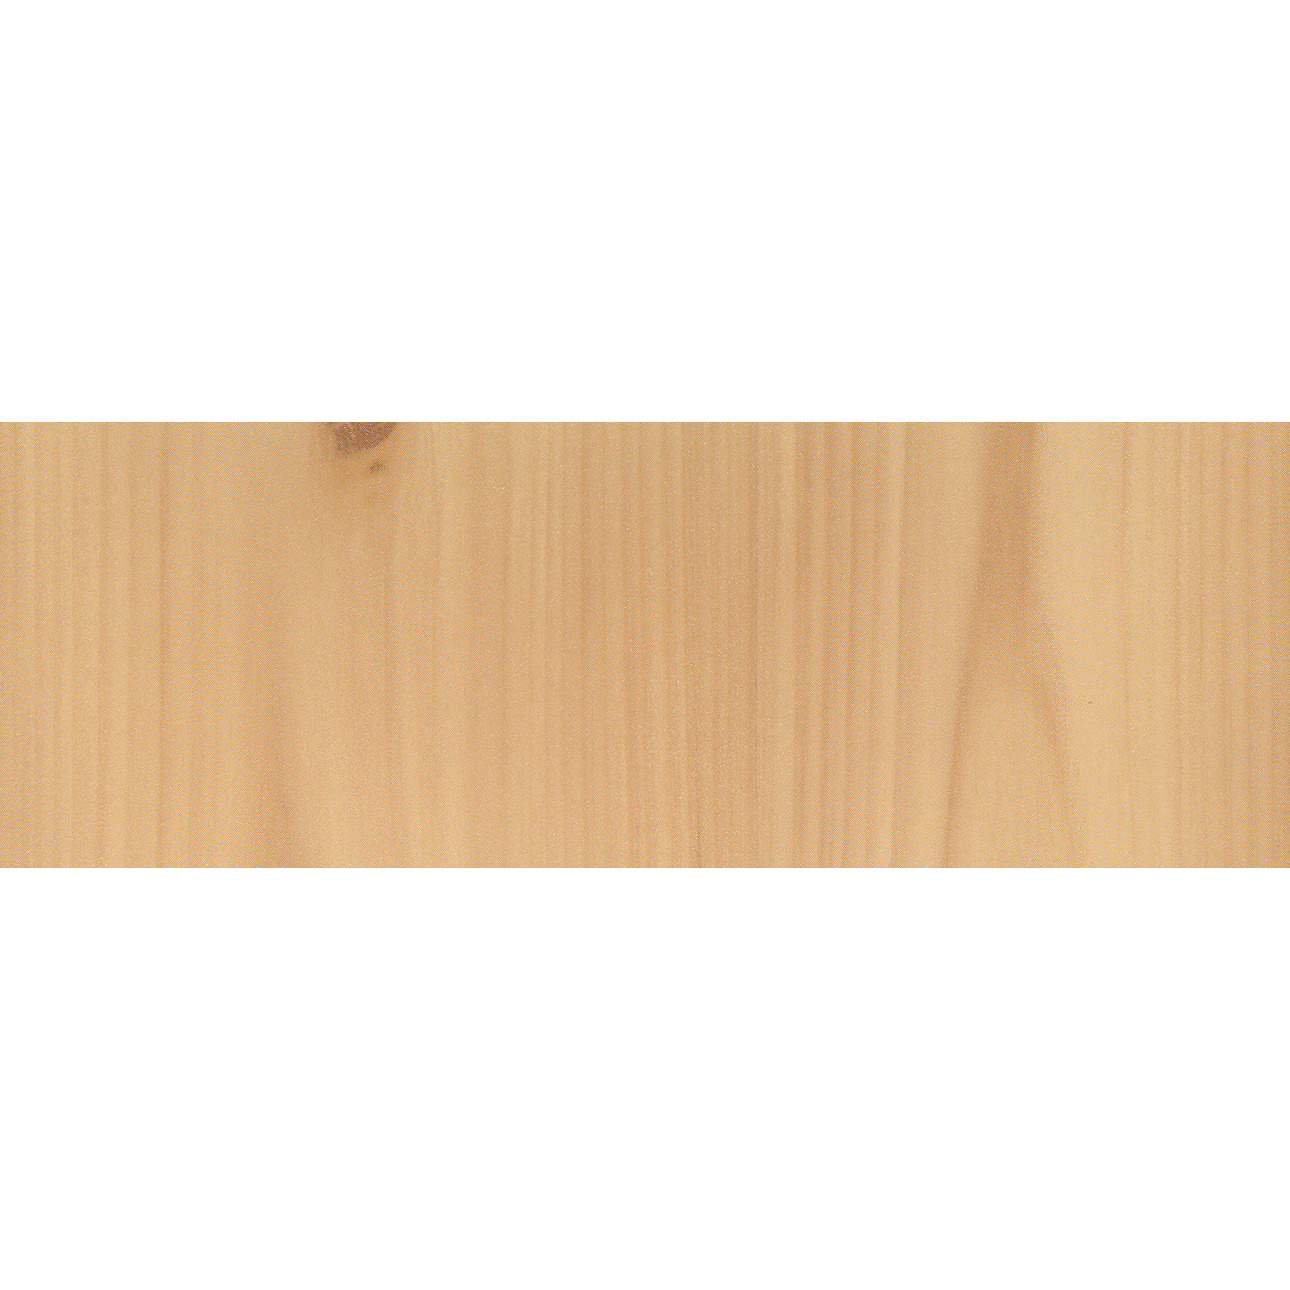 Decoratie plakfolie grenen houtnerf look licht bruin 45 cm x 2 meter zelfklevend